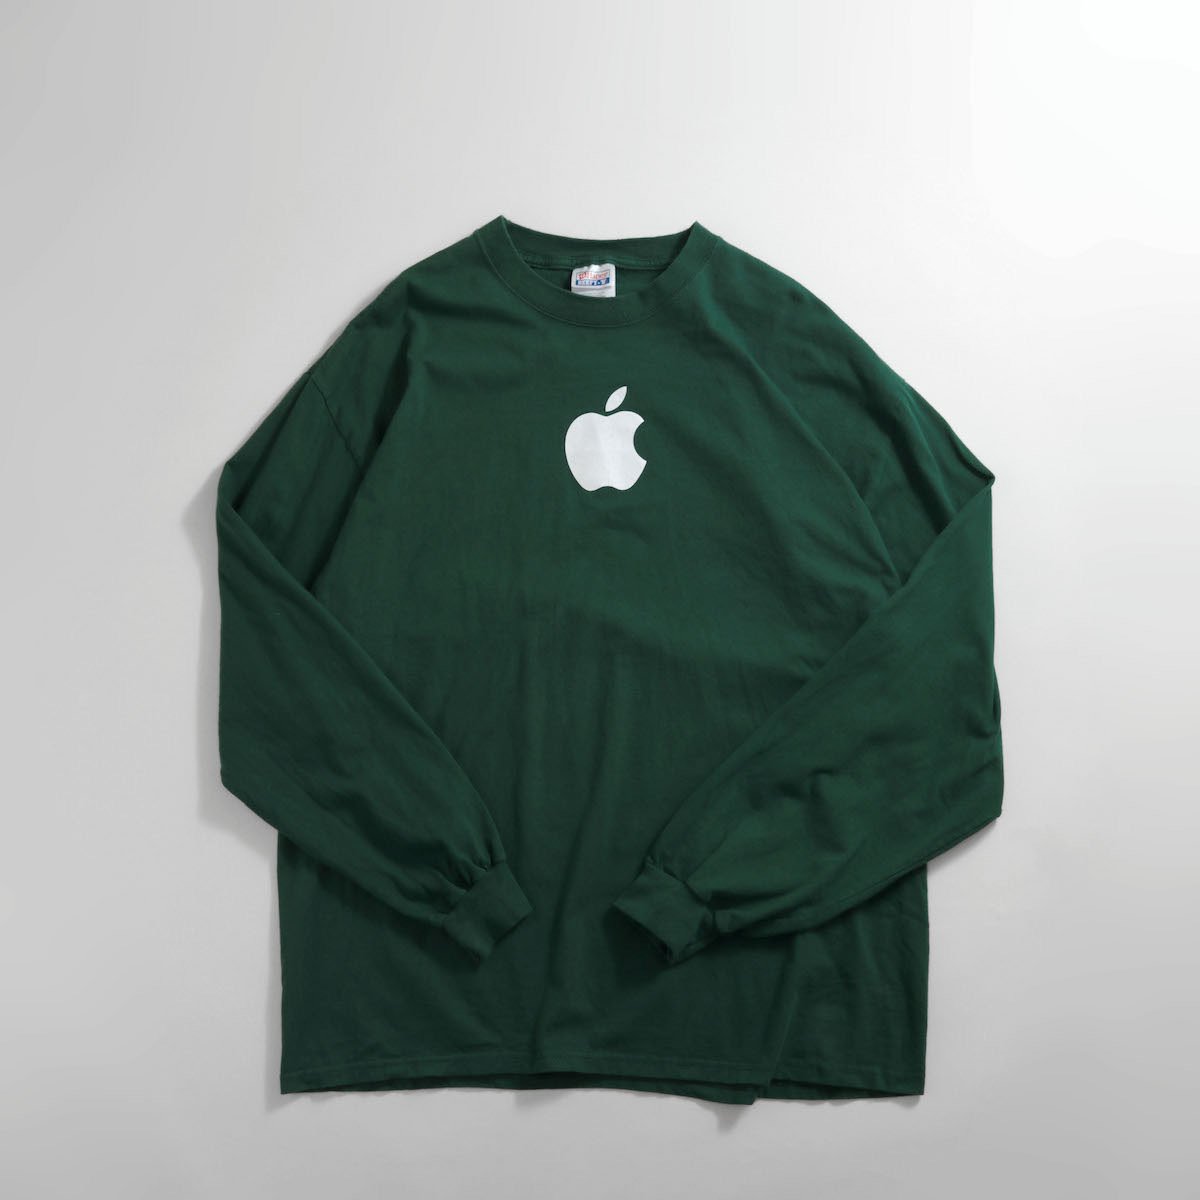 MT17 Tシャツ アップル Apple 企業T アドT マック ロゴ Lサイズ家と外で